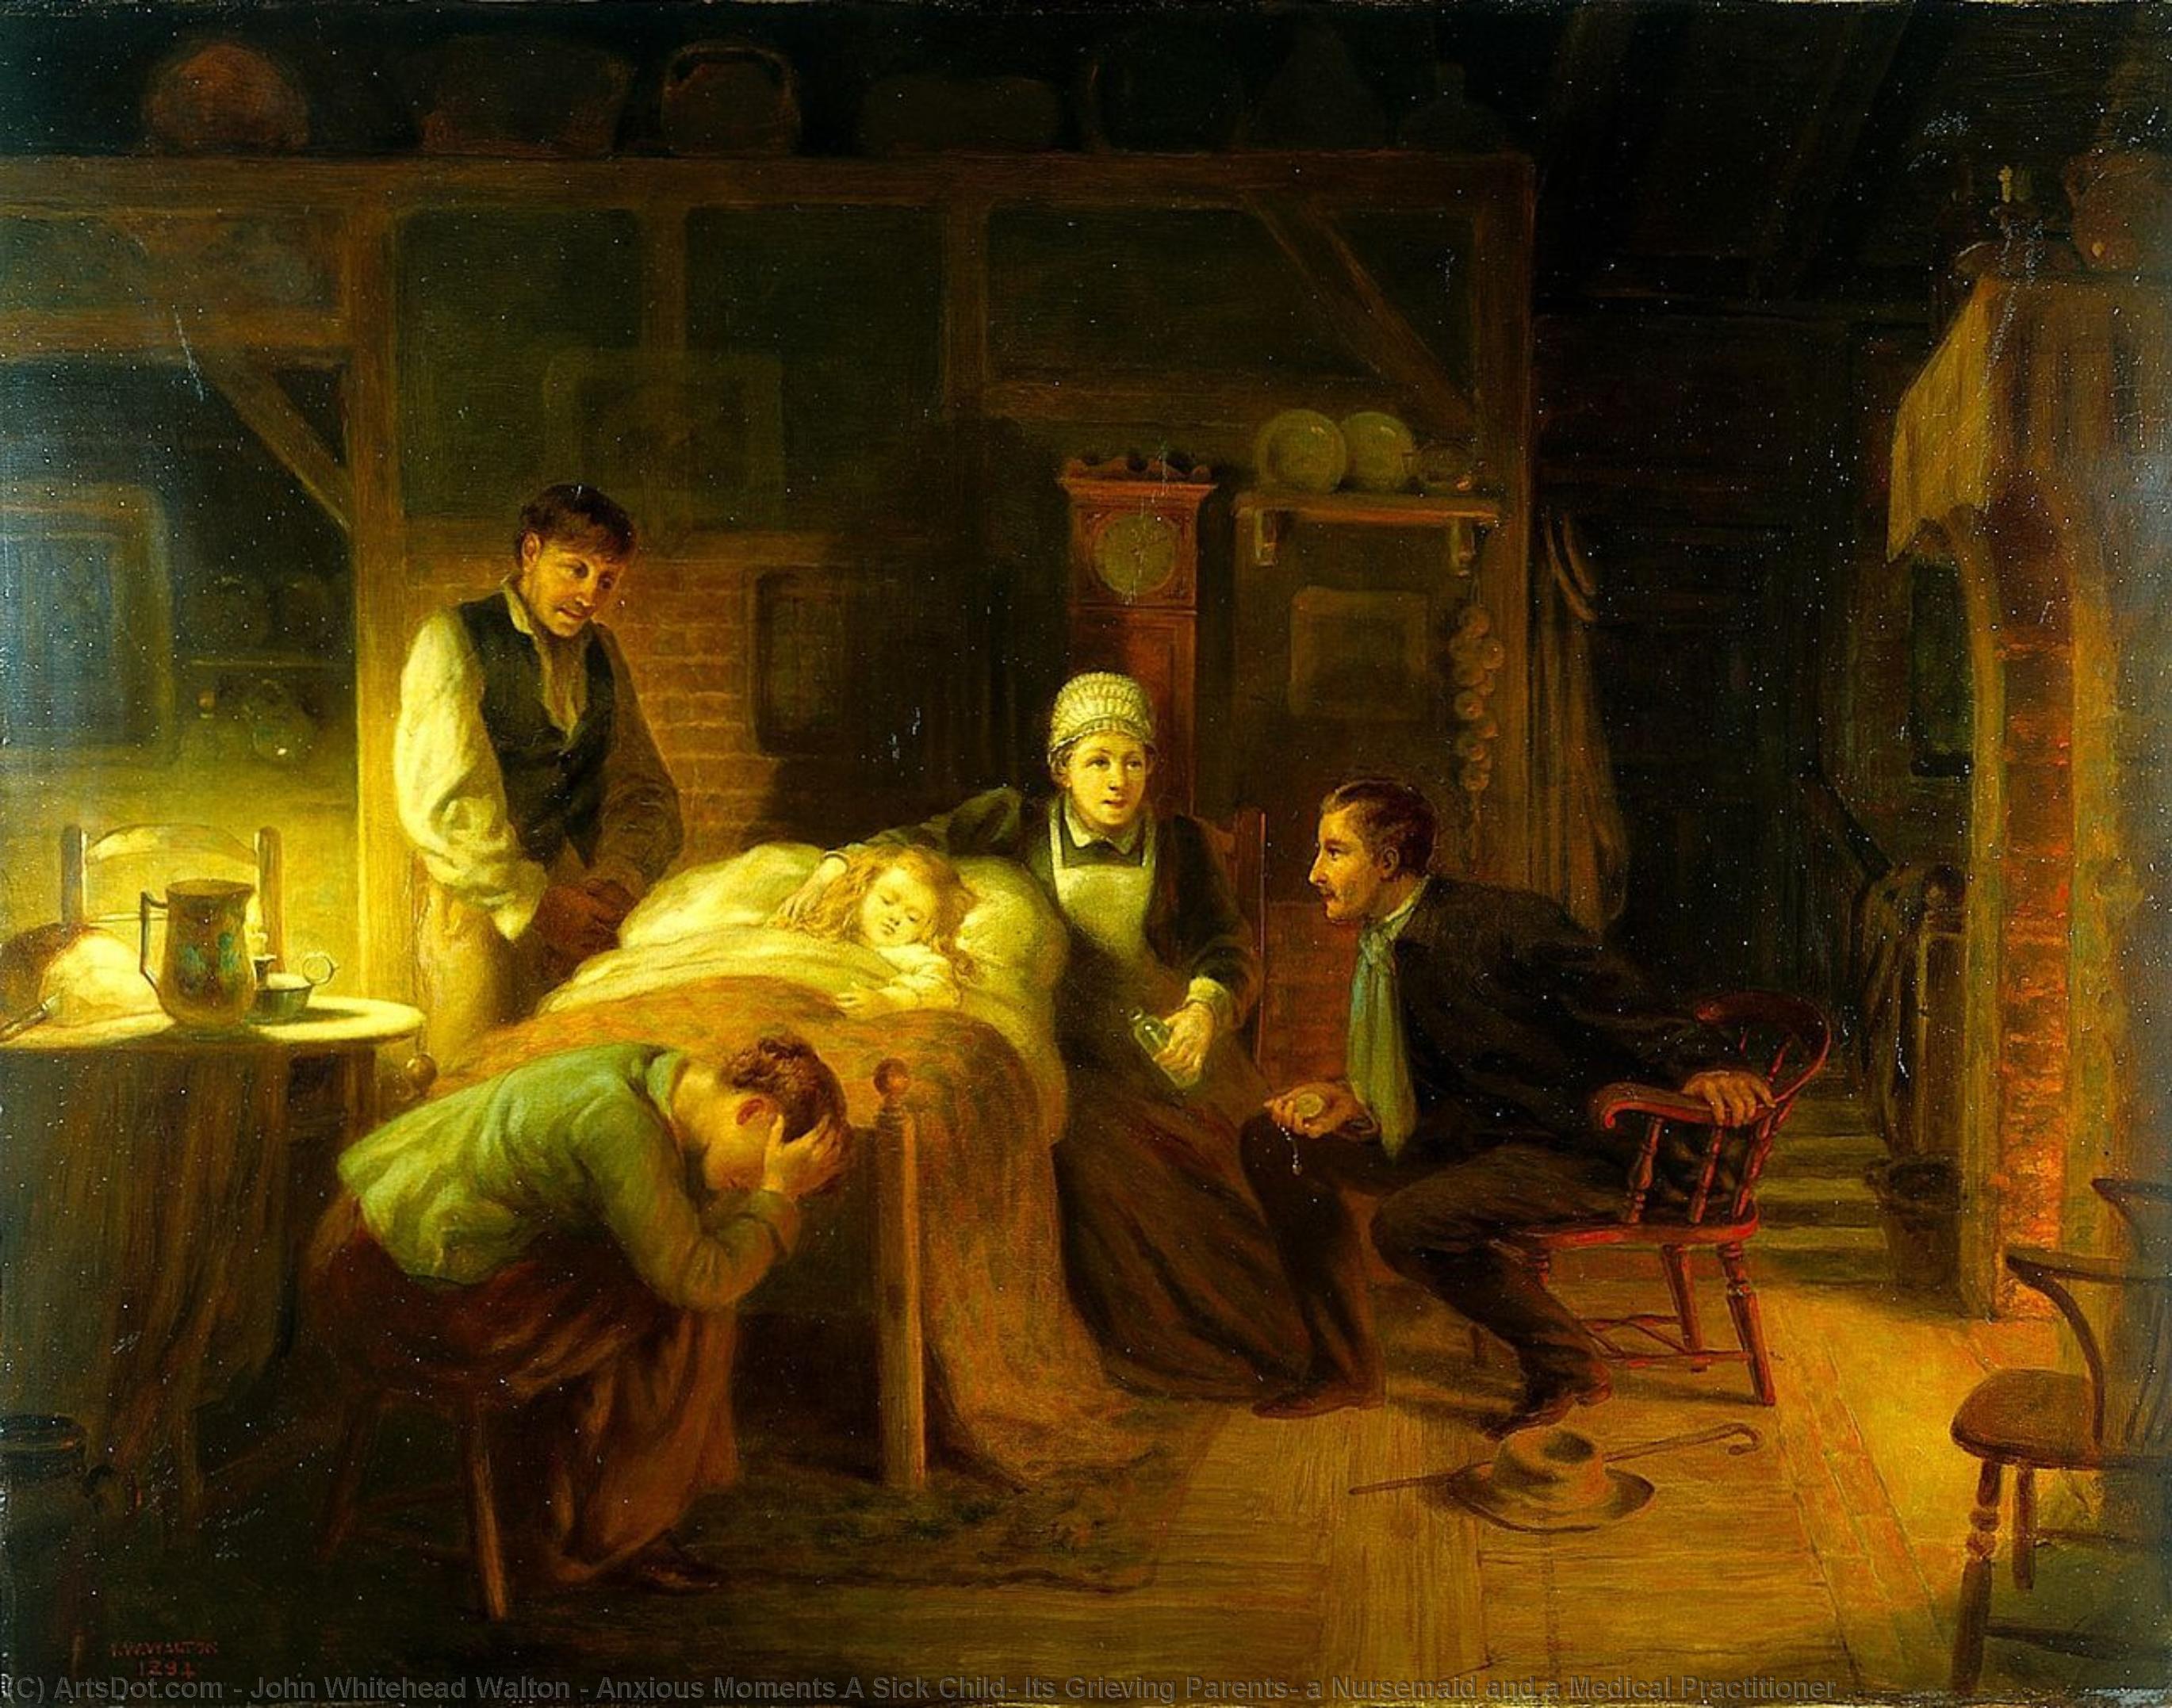 Kauf Museum Kunstreproduktionen Anxious Moments A Sick Child, Seine Grieving Eltern, eine Krankenschwester und ein medizinischer Praktizierender, 1894 von John Whitehead Walton (1815-1895) | ArtsDot.com